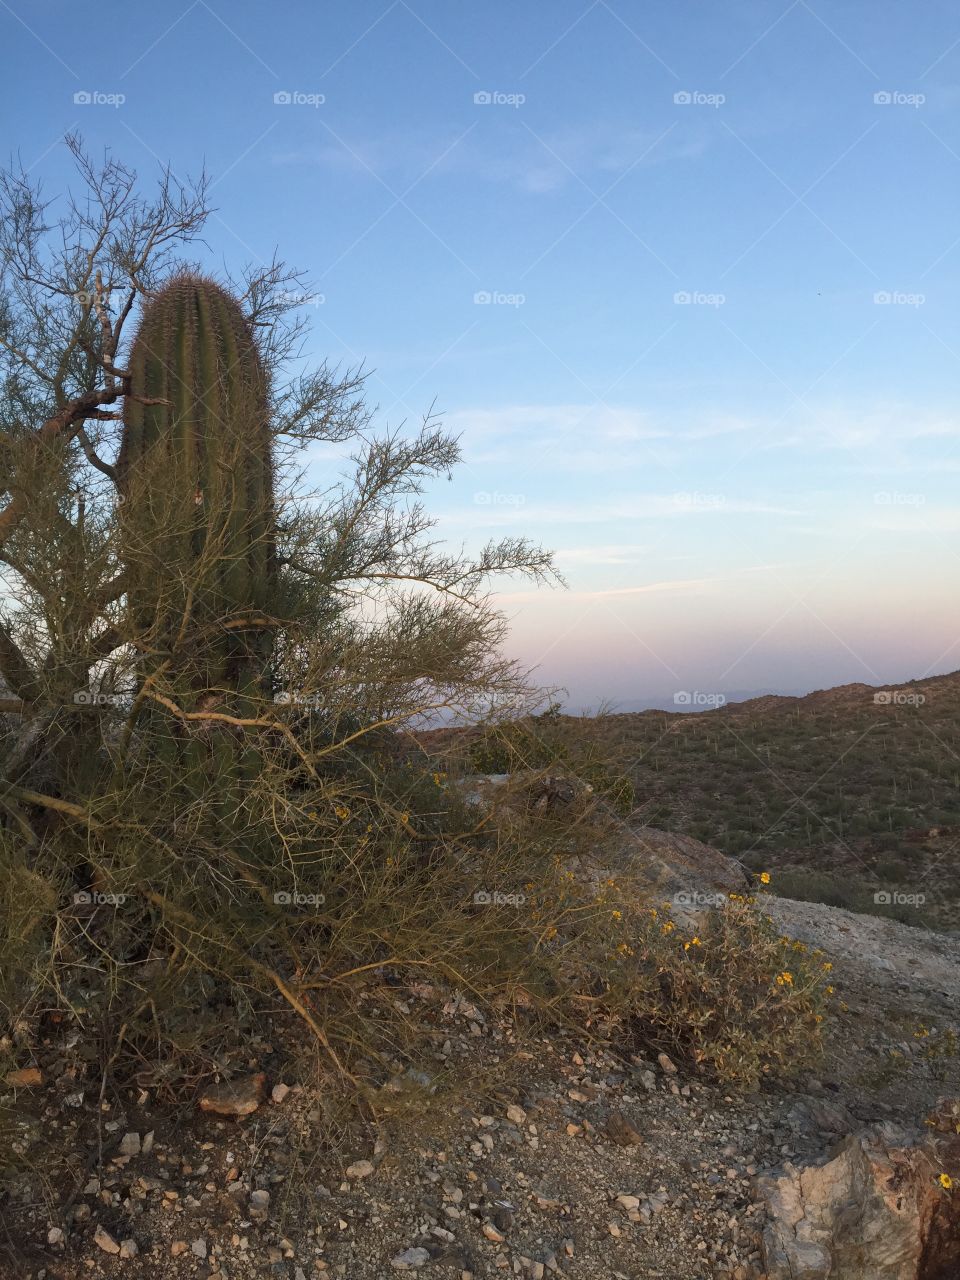 The lone cactus